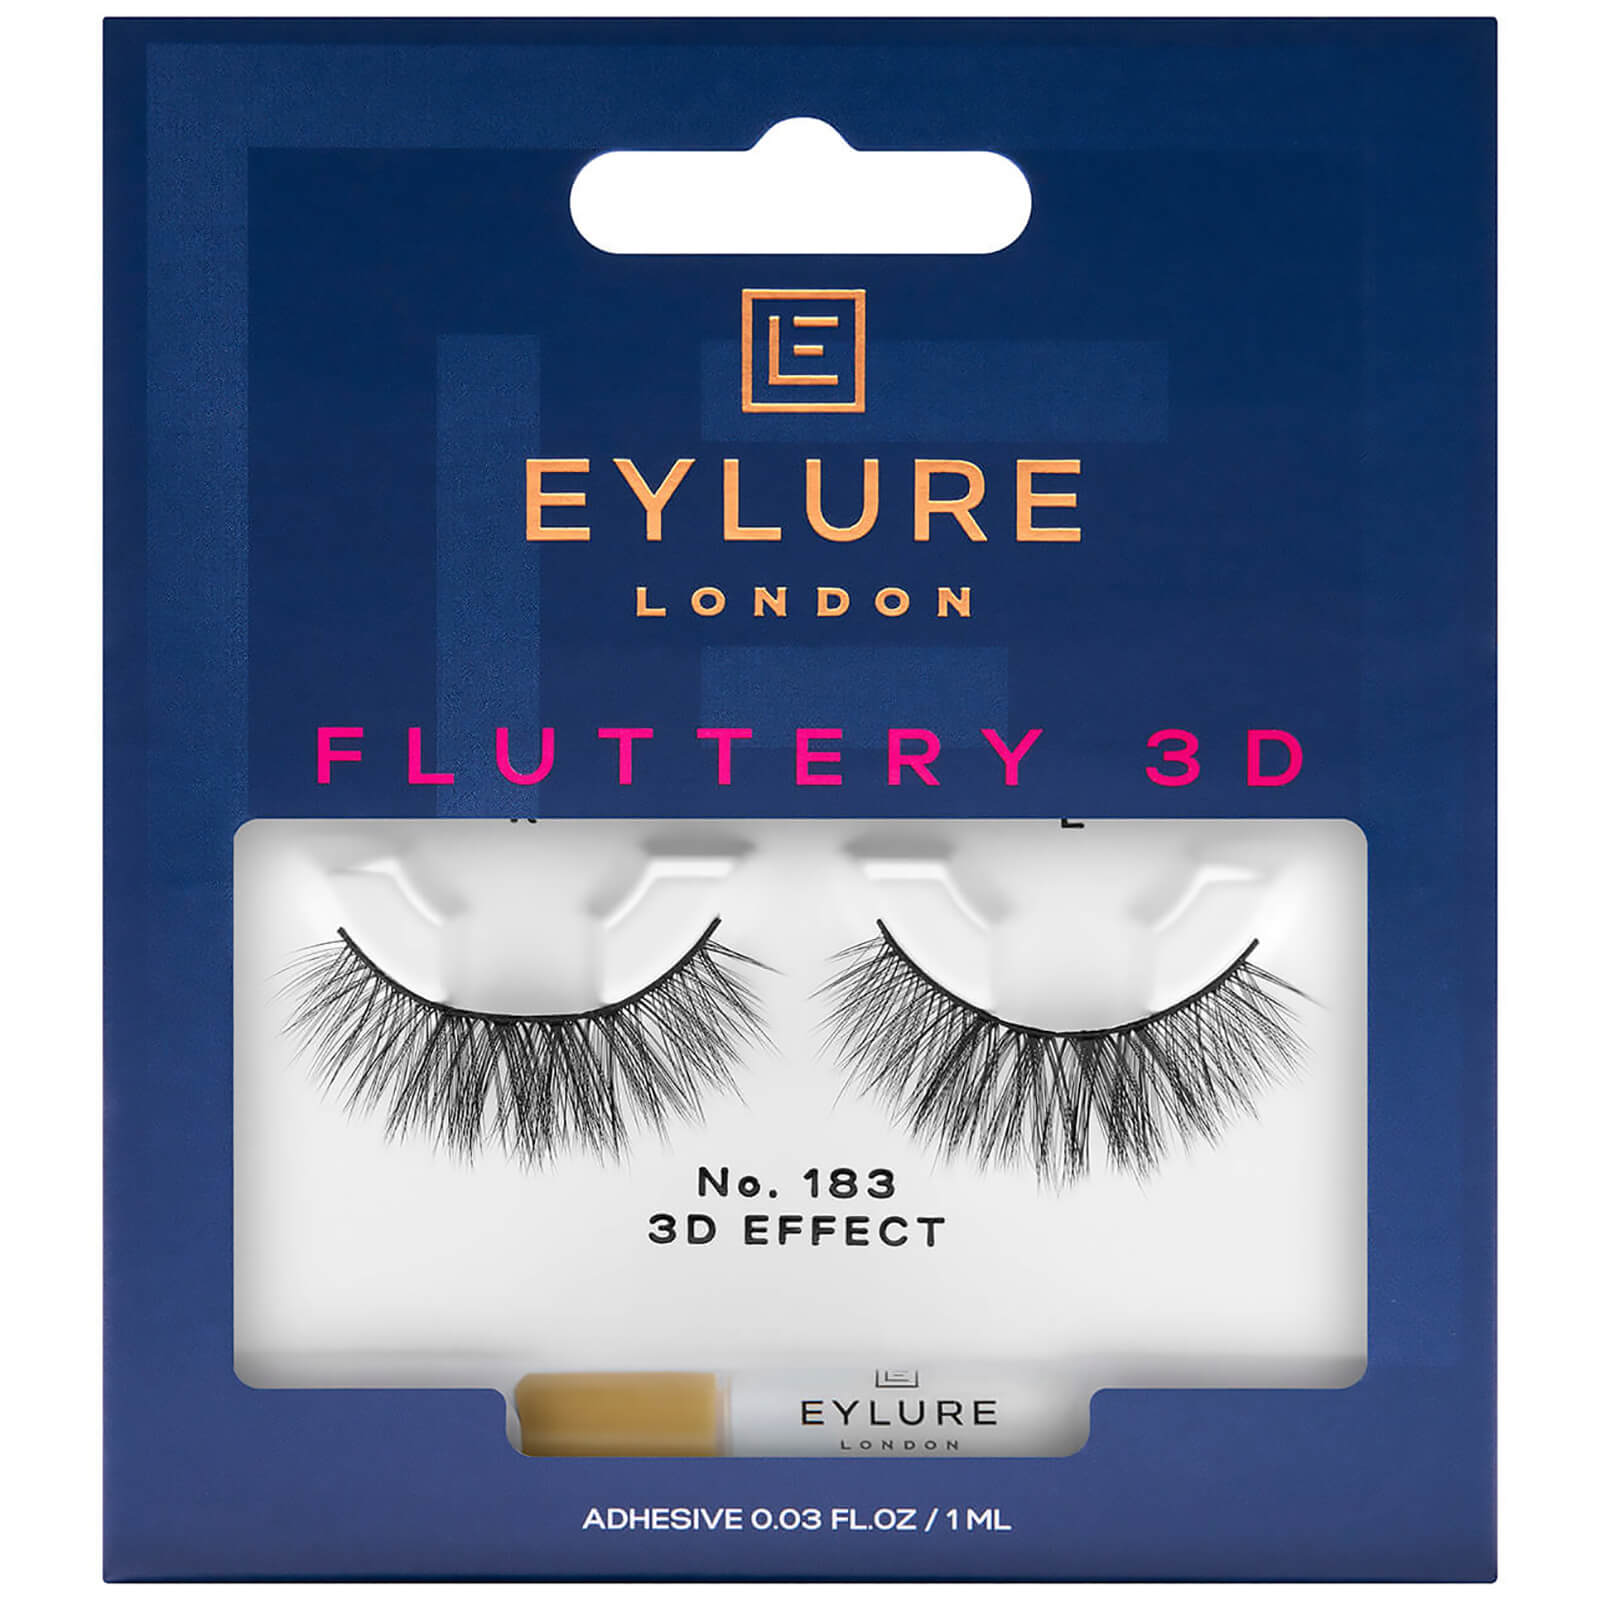 Eylure Fluttery 3D No. 183 Lash